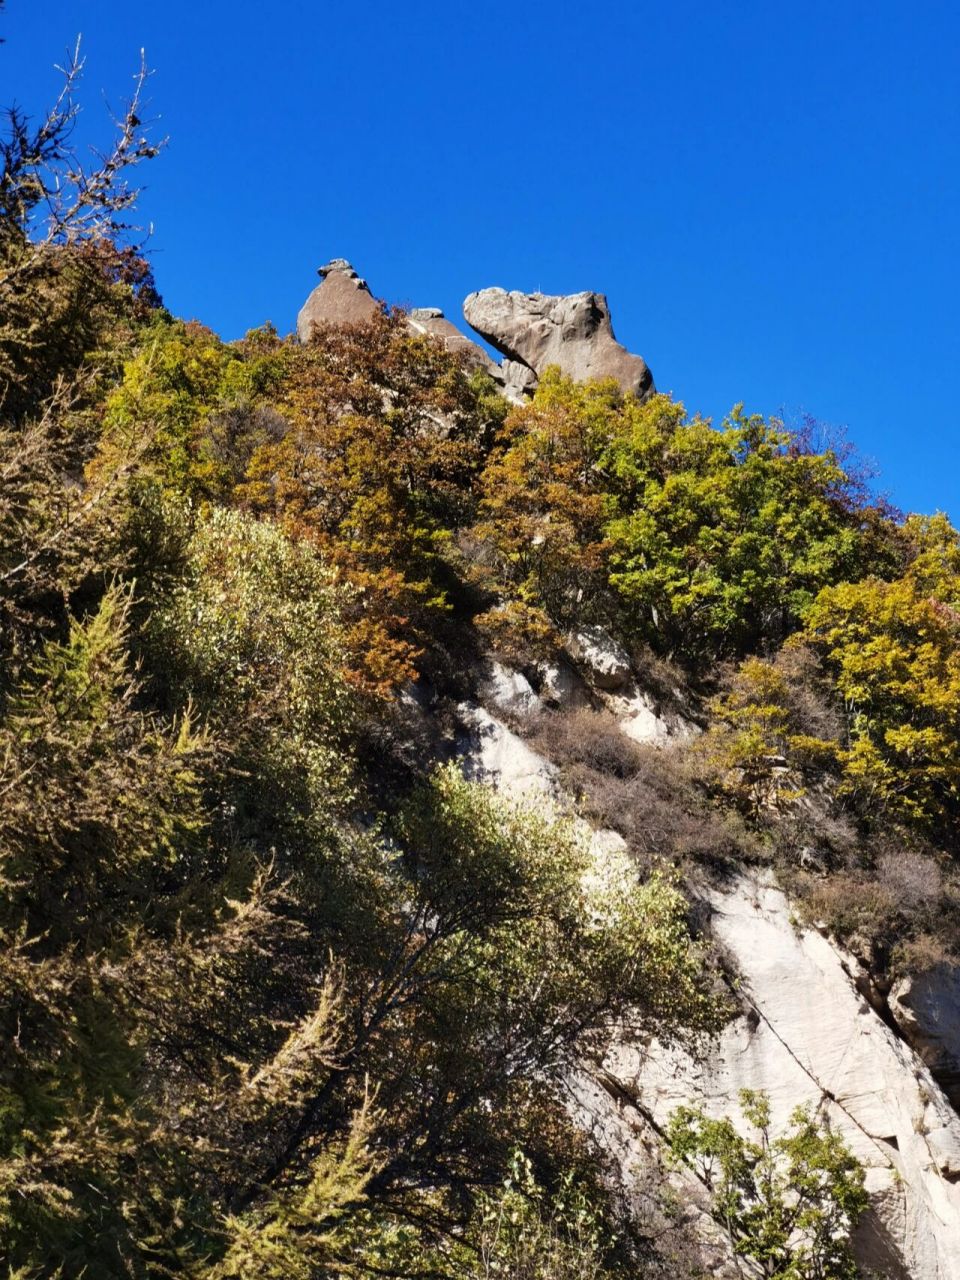 五岳寨风景区 五岳寨位于灵寿县西北部深山区,因五座山峰并列耸立,且